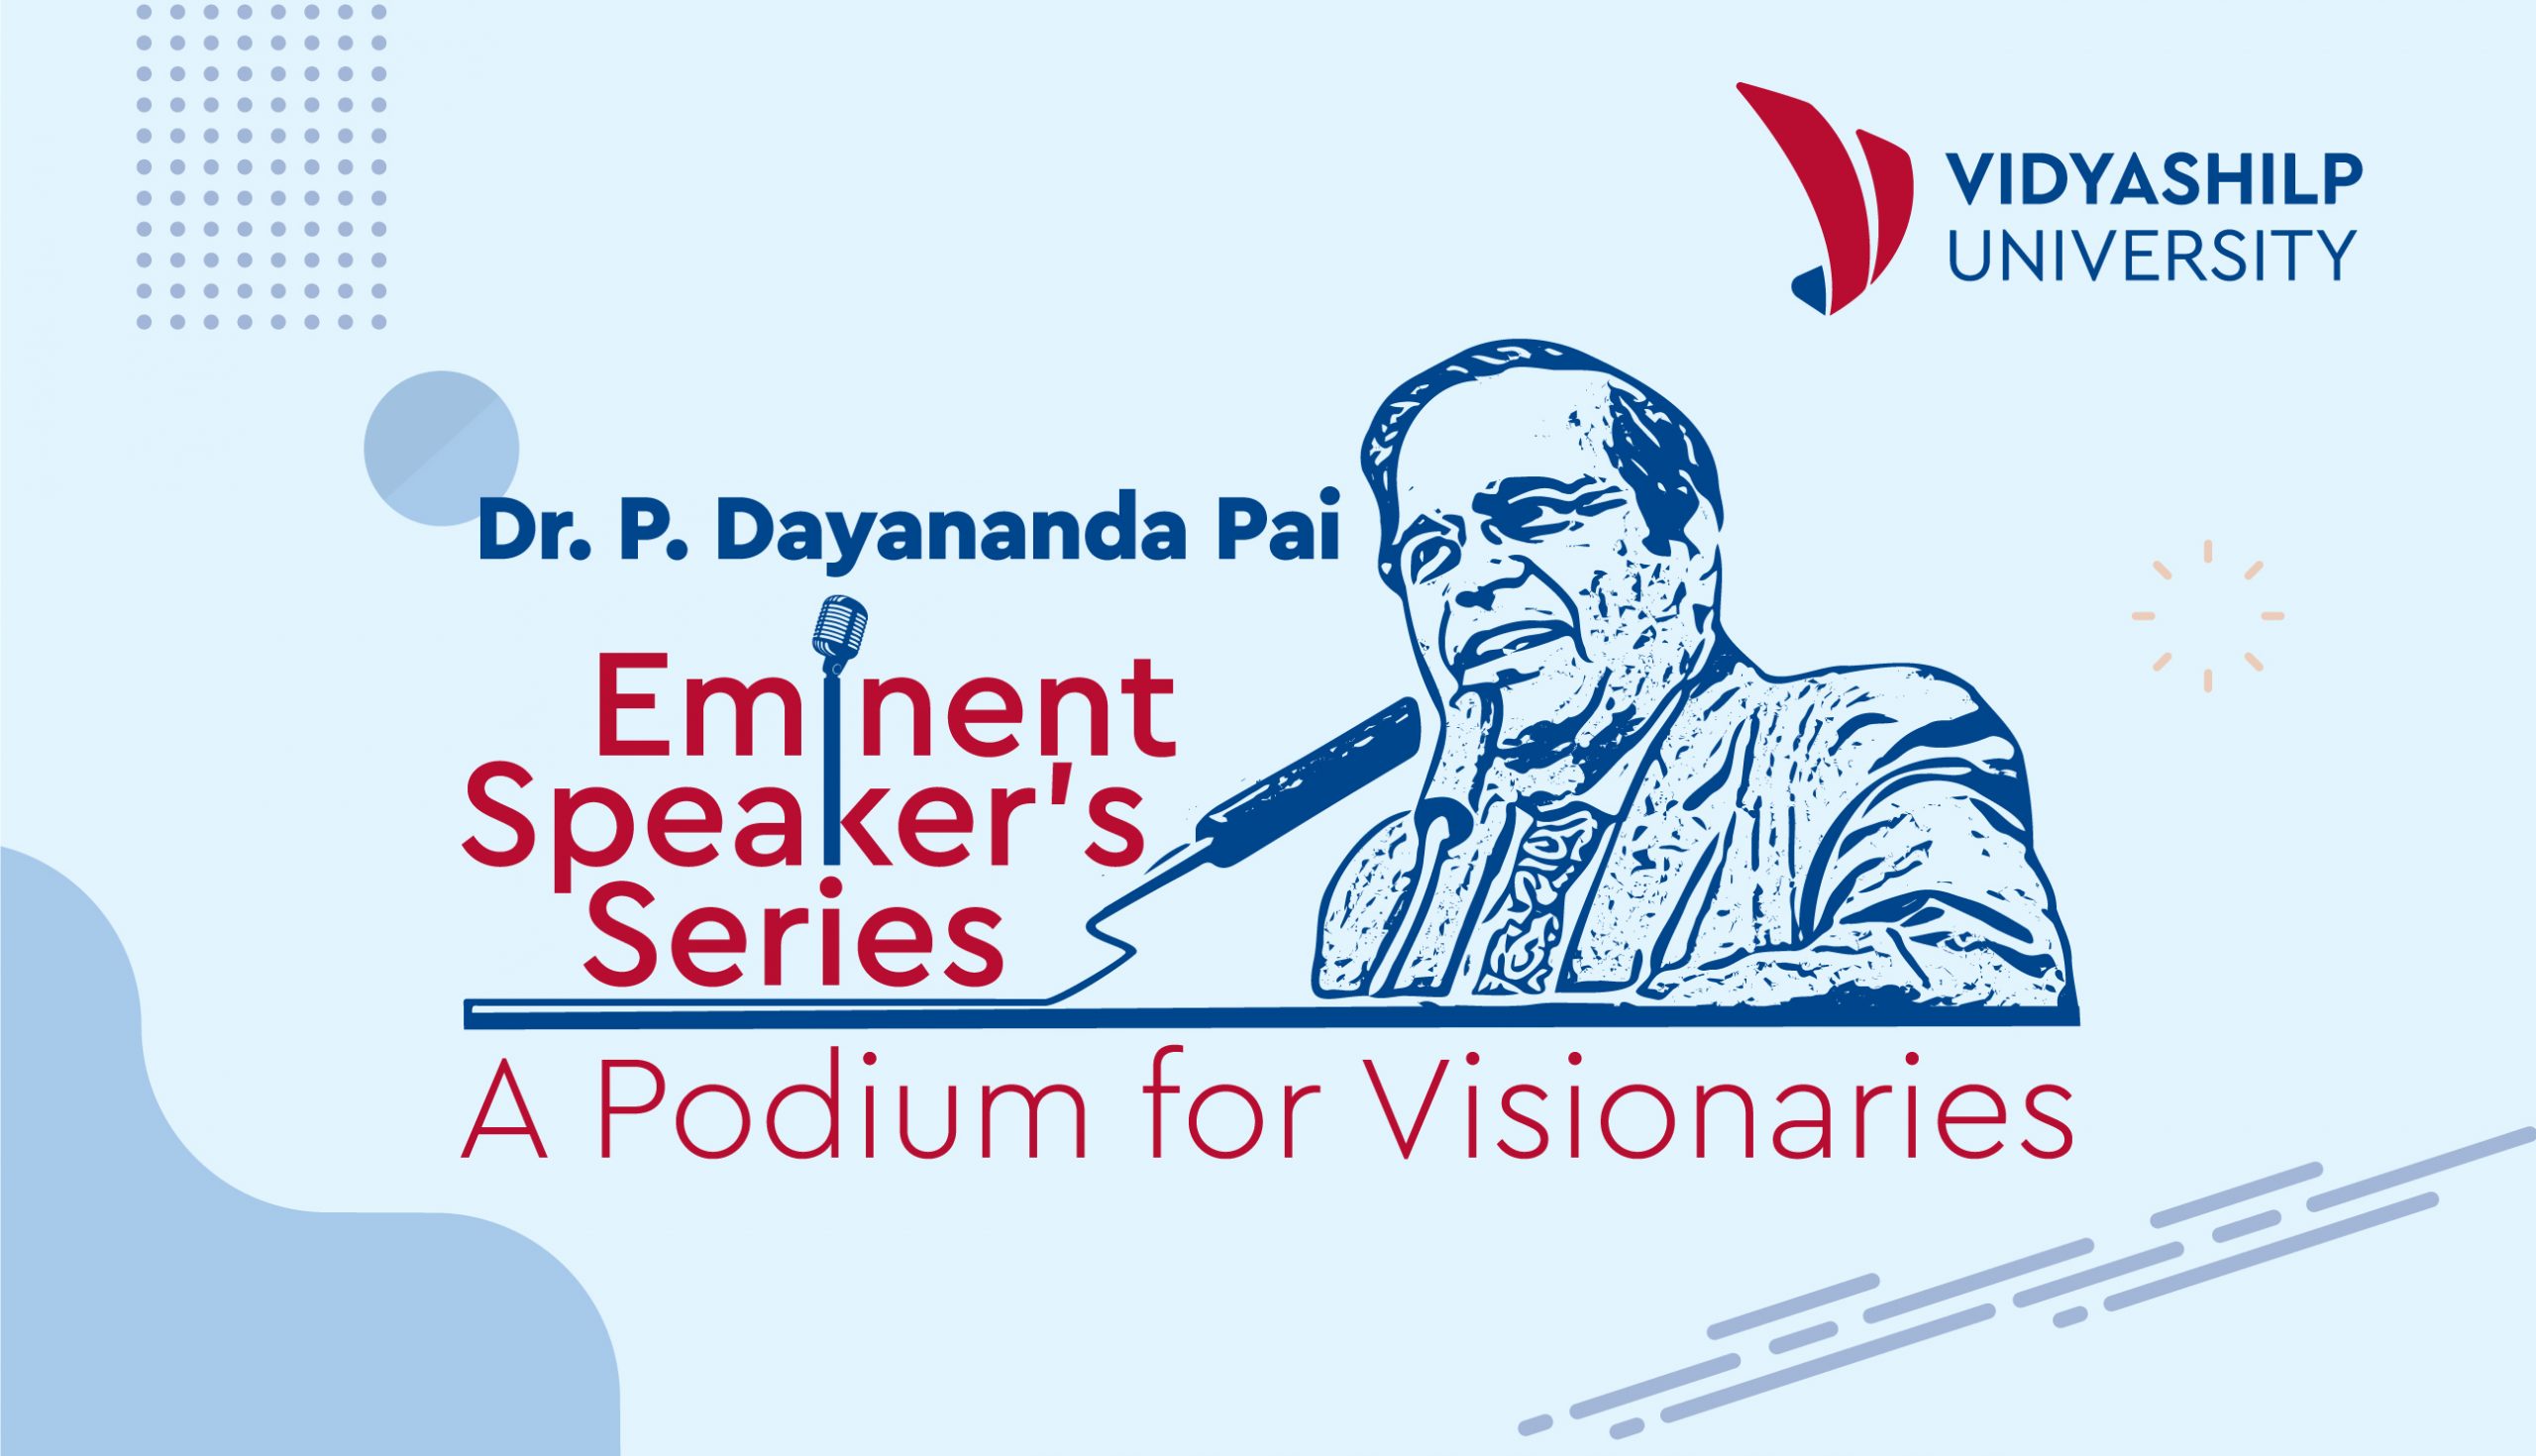 Event: Vidyashilp University